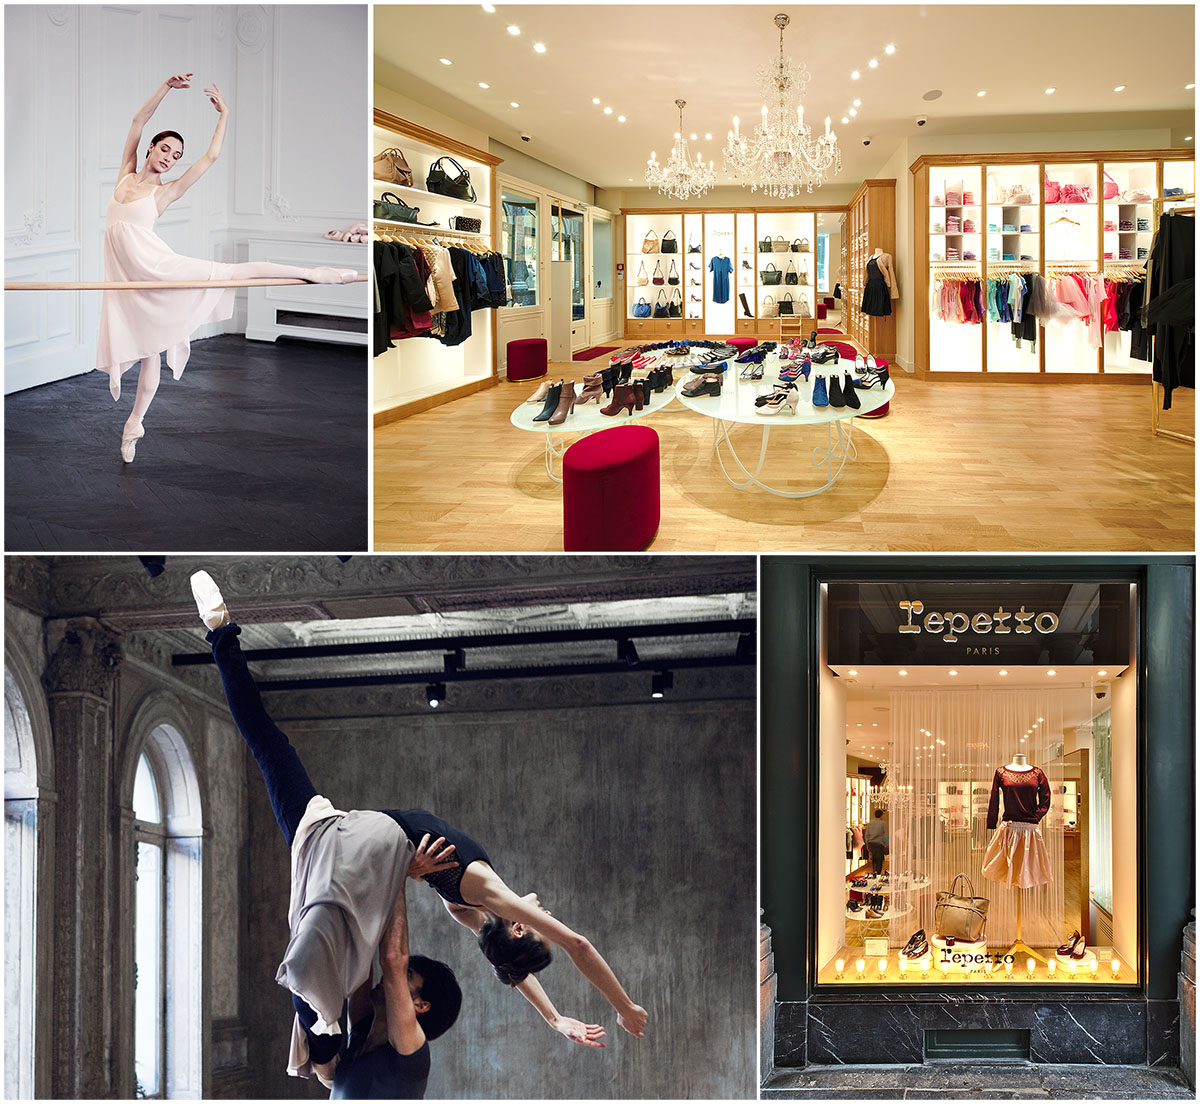 La boutique Repetto à 1000 Bruxelles au 36 Galerie du Roi, spécialiste des chaussons de danse et vêtements de danse